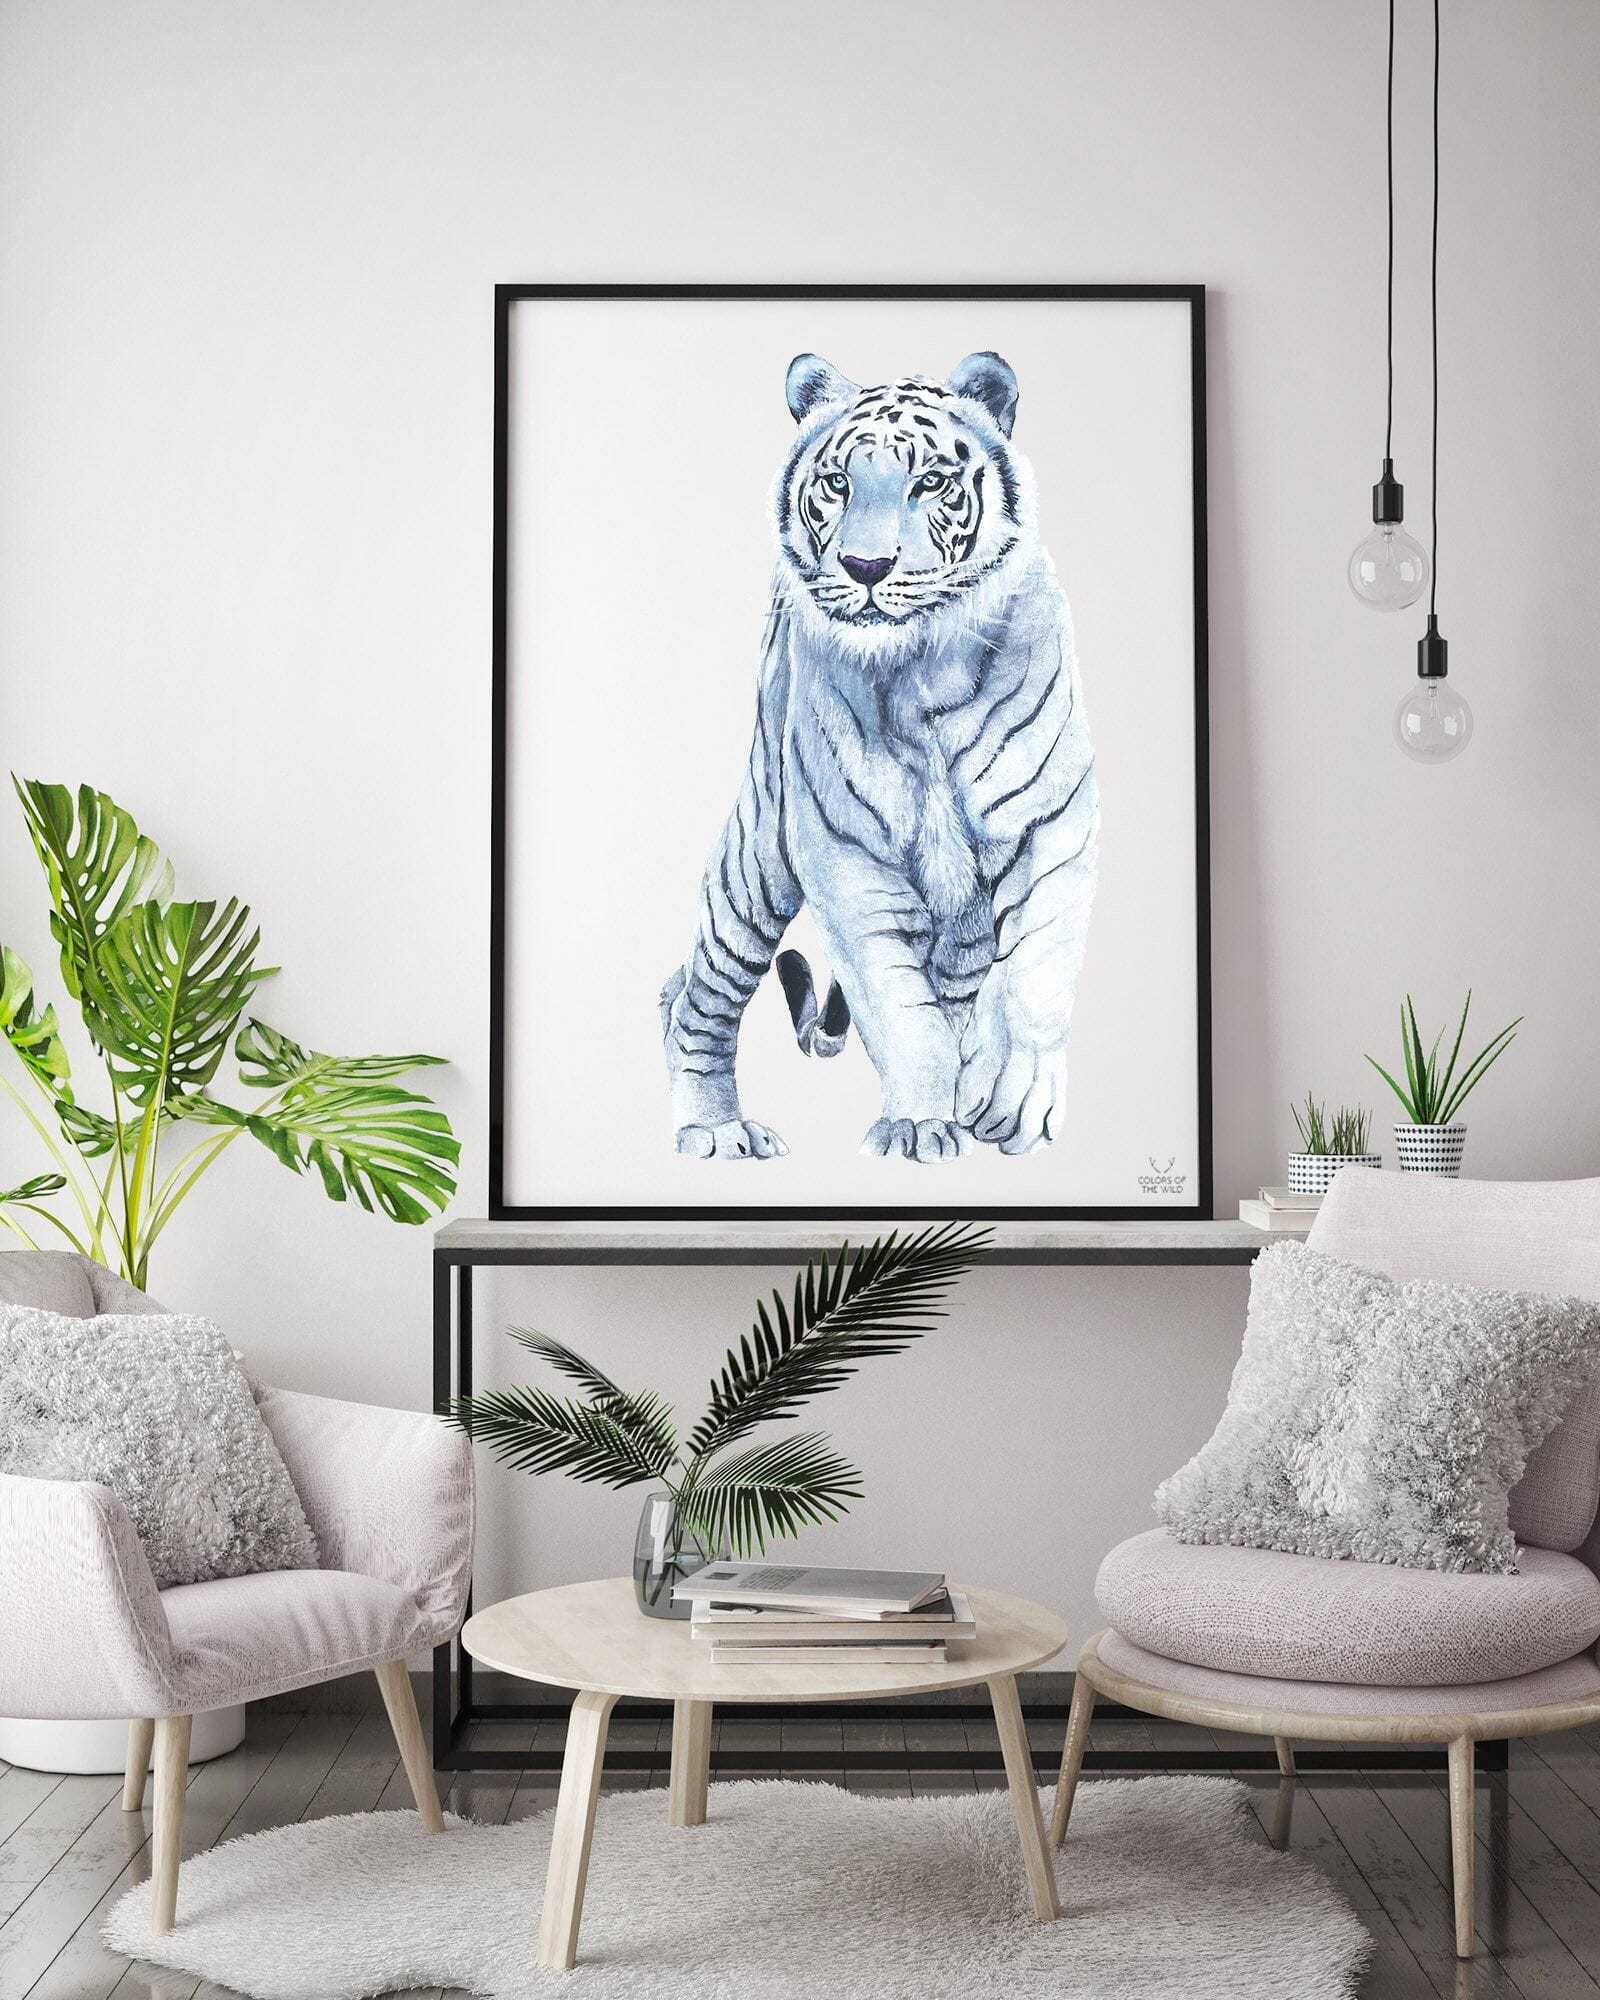 White Tiger Fine Art Print